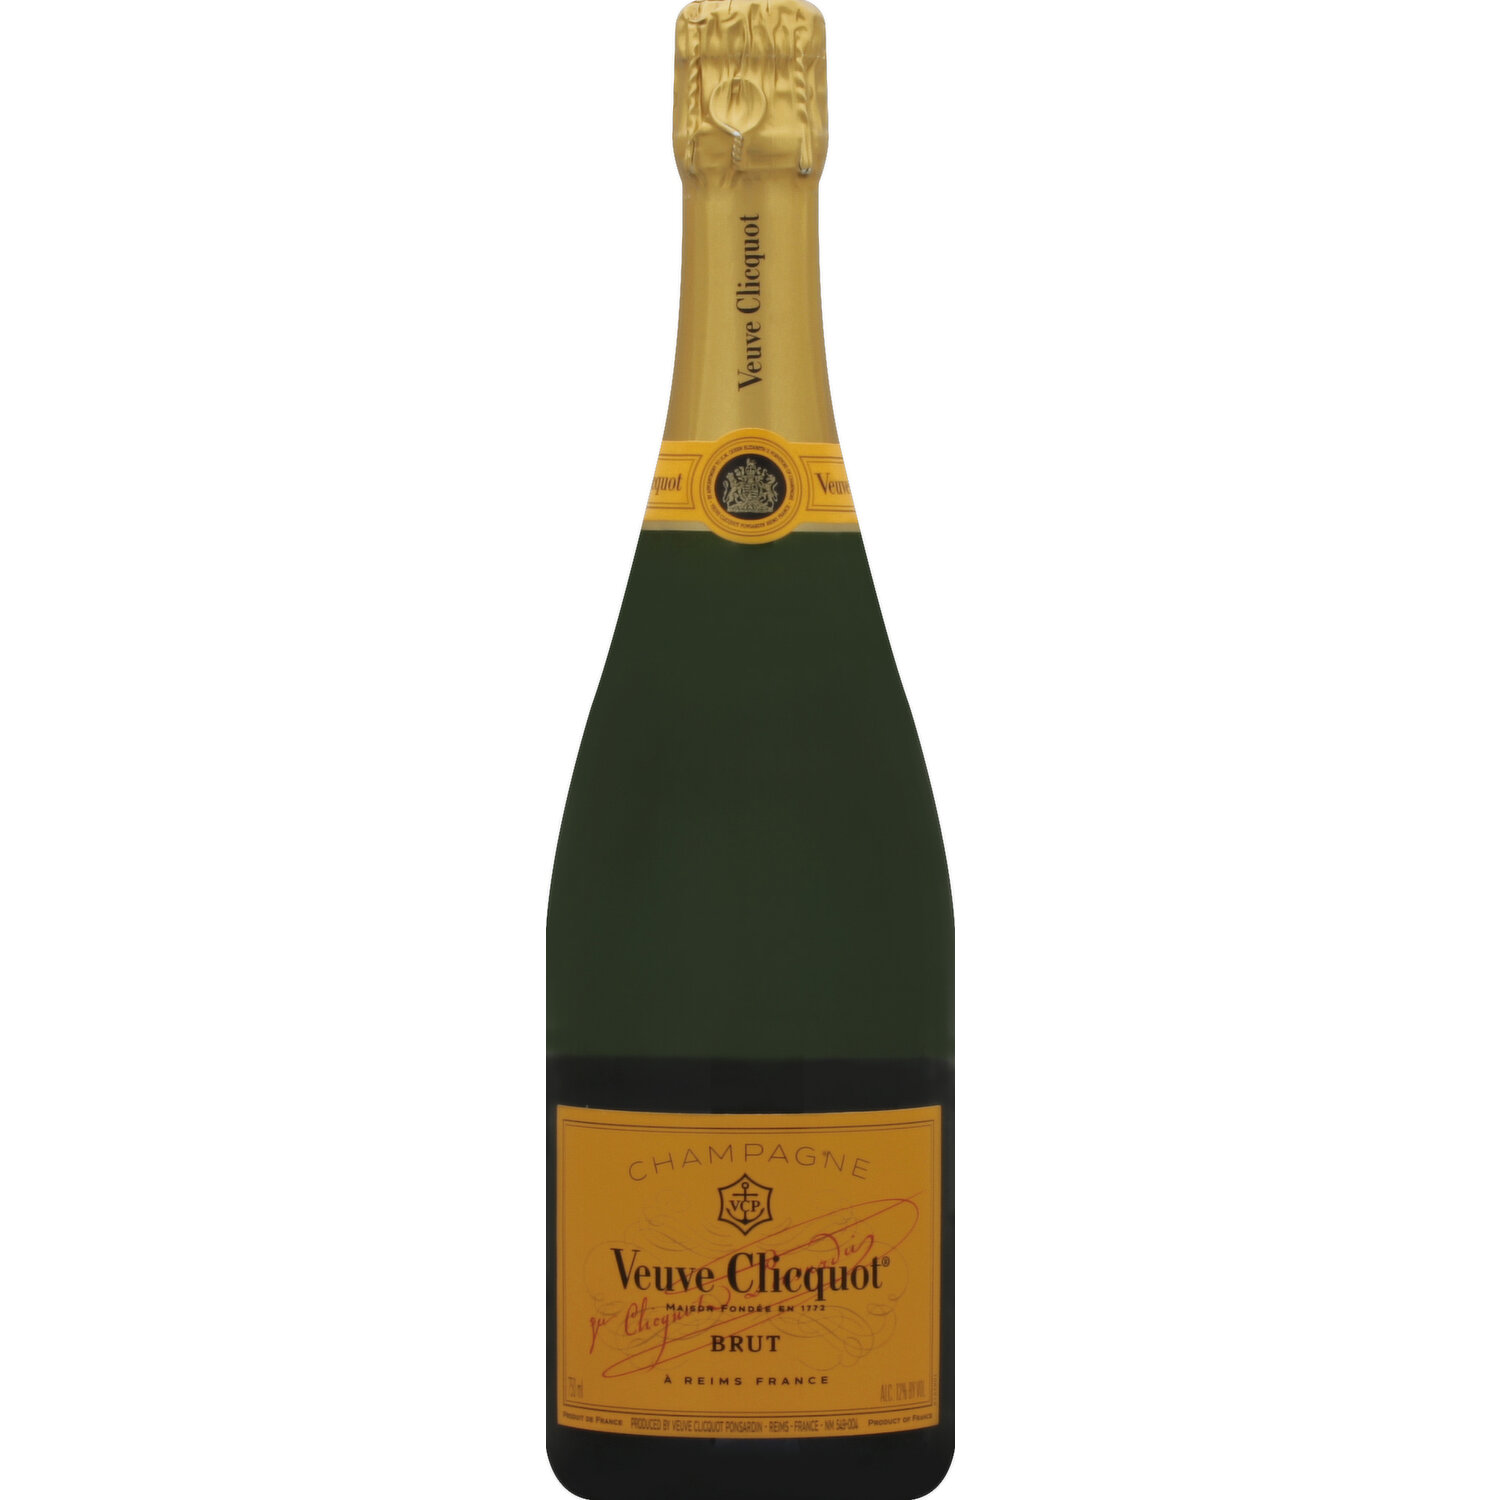 Veuve Clicquot Champagne Vector Logo - Download Free SVG Icon